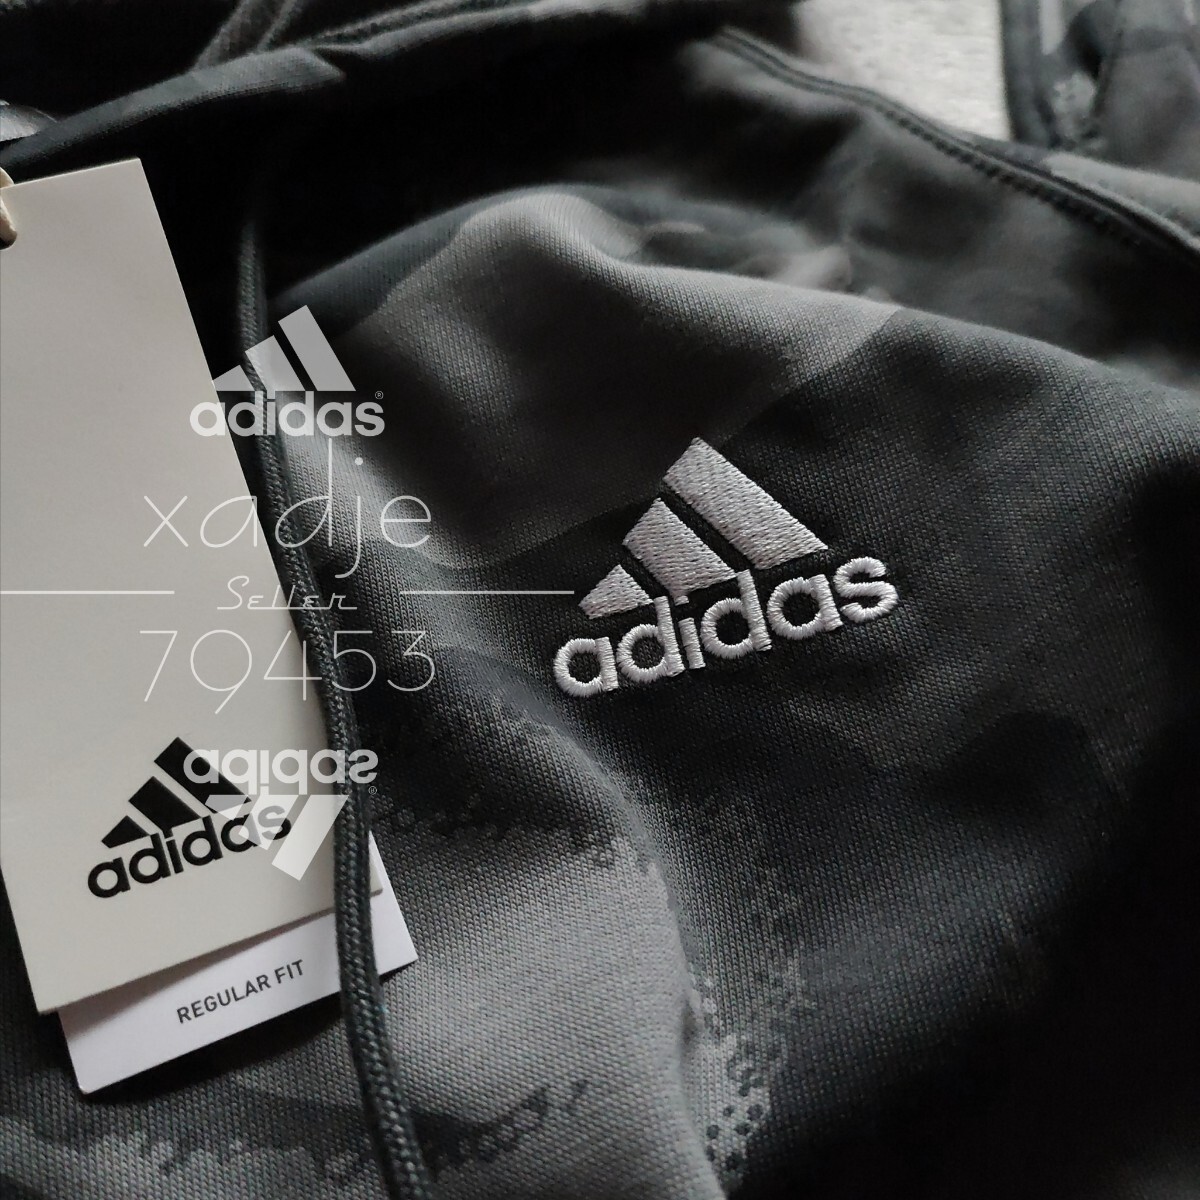 新品 正規品 adidas アディダス 上下セット スウェット セットアップ グレー チャコール 黒 ブラック ロゴ刺繍 総柄 迷彩 薄手 XL